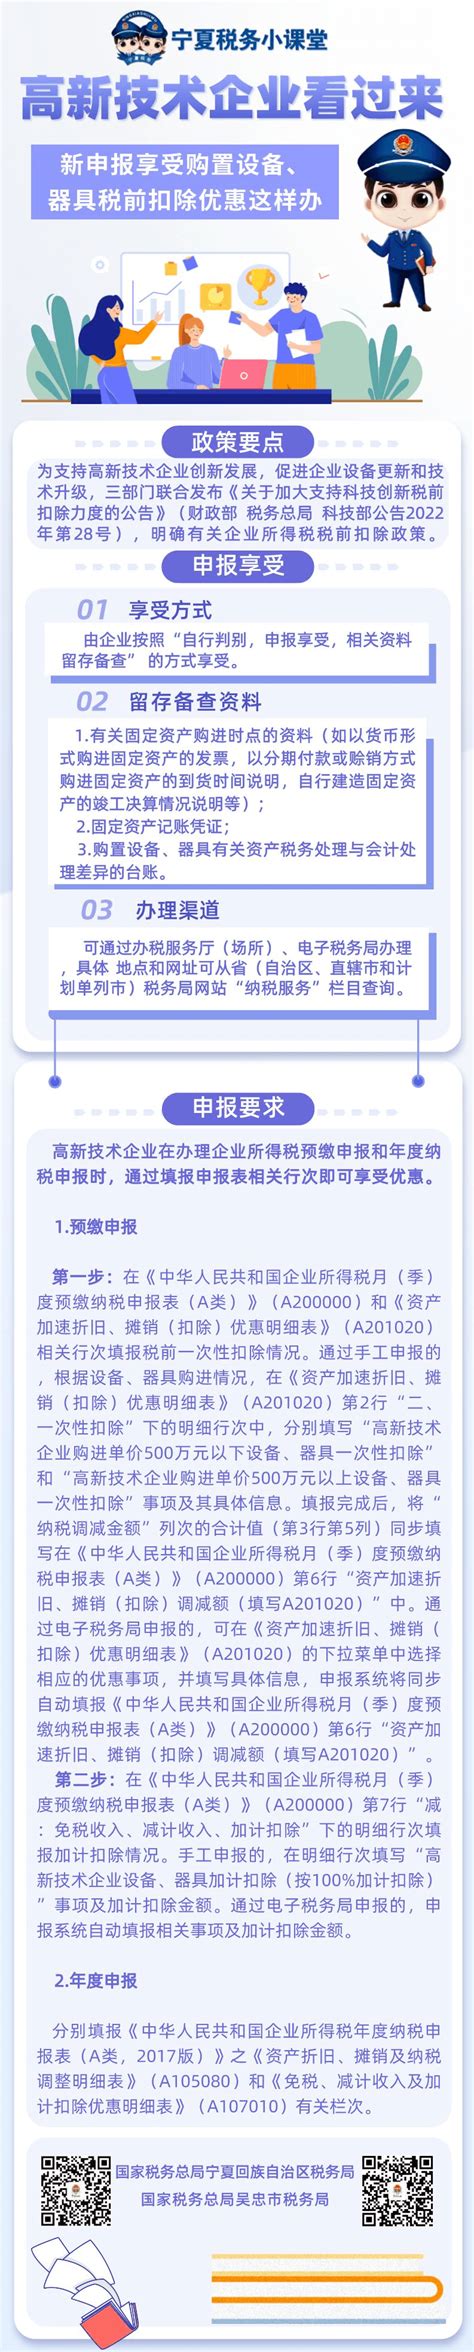 宁夏电子税务局入口及残疾人就业保障金申报流程说明_95商服网